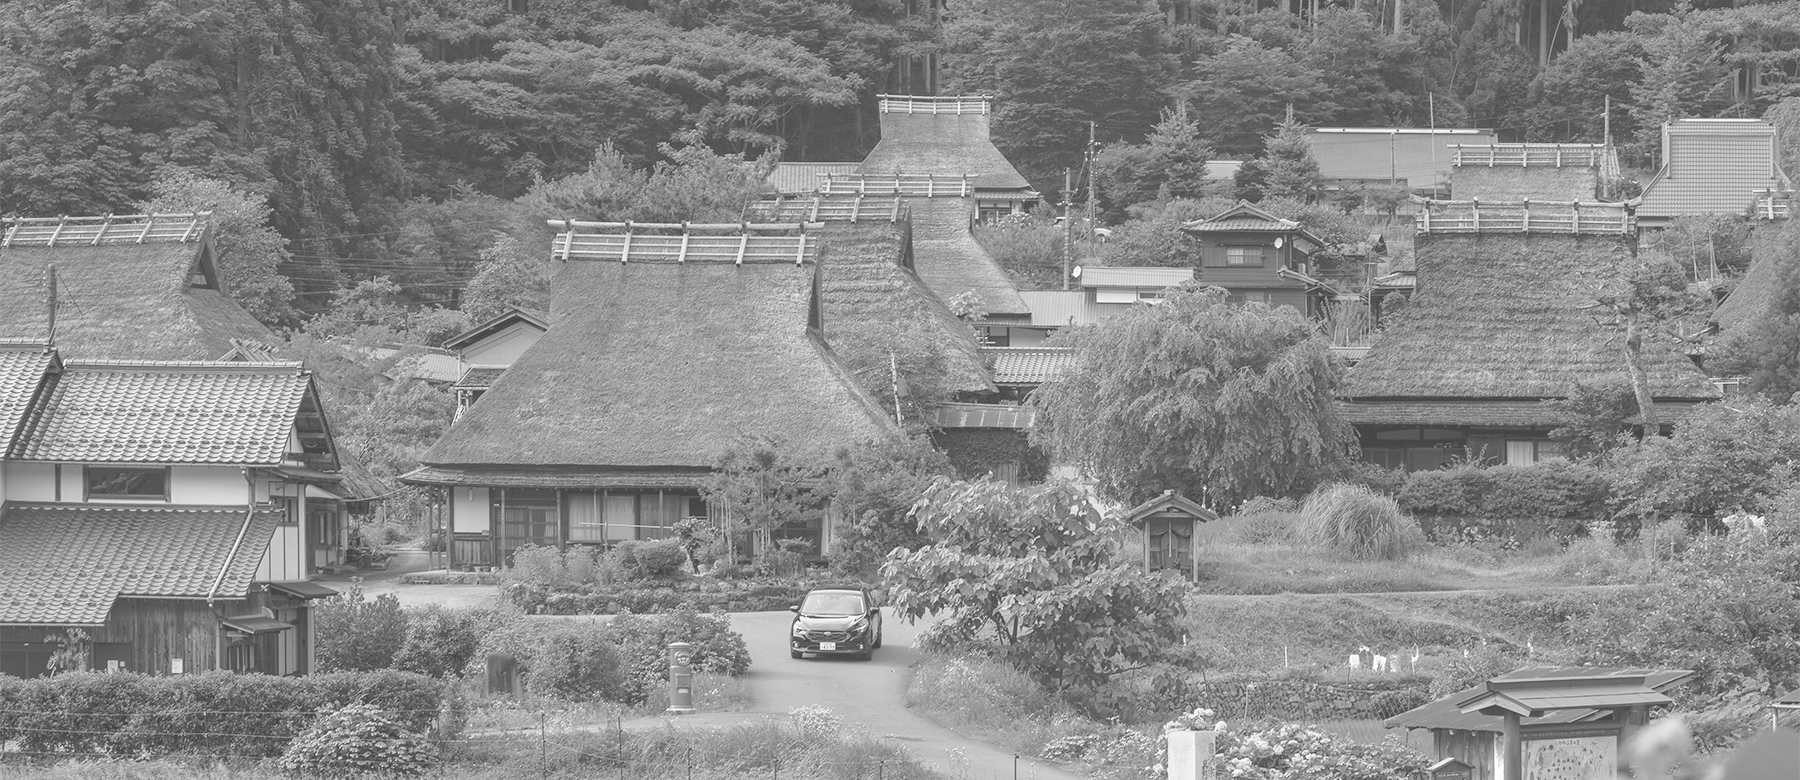 京都府にある「美山かやぶきの里」。茅葺き屋根の建物がいくつも並んでいる | SUBARU